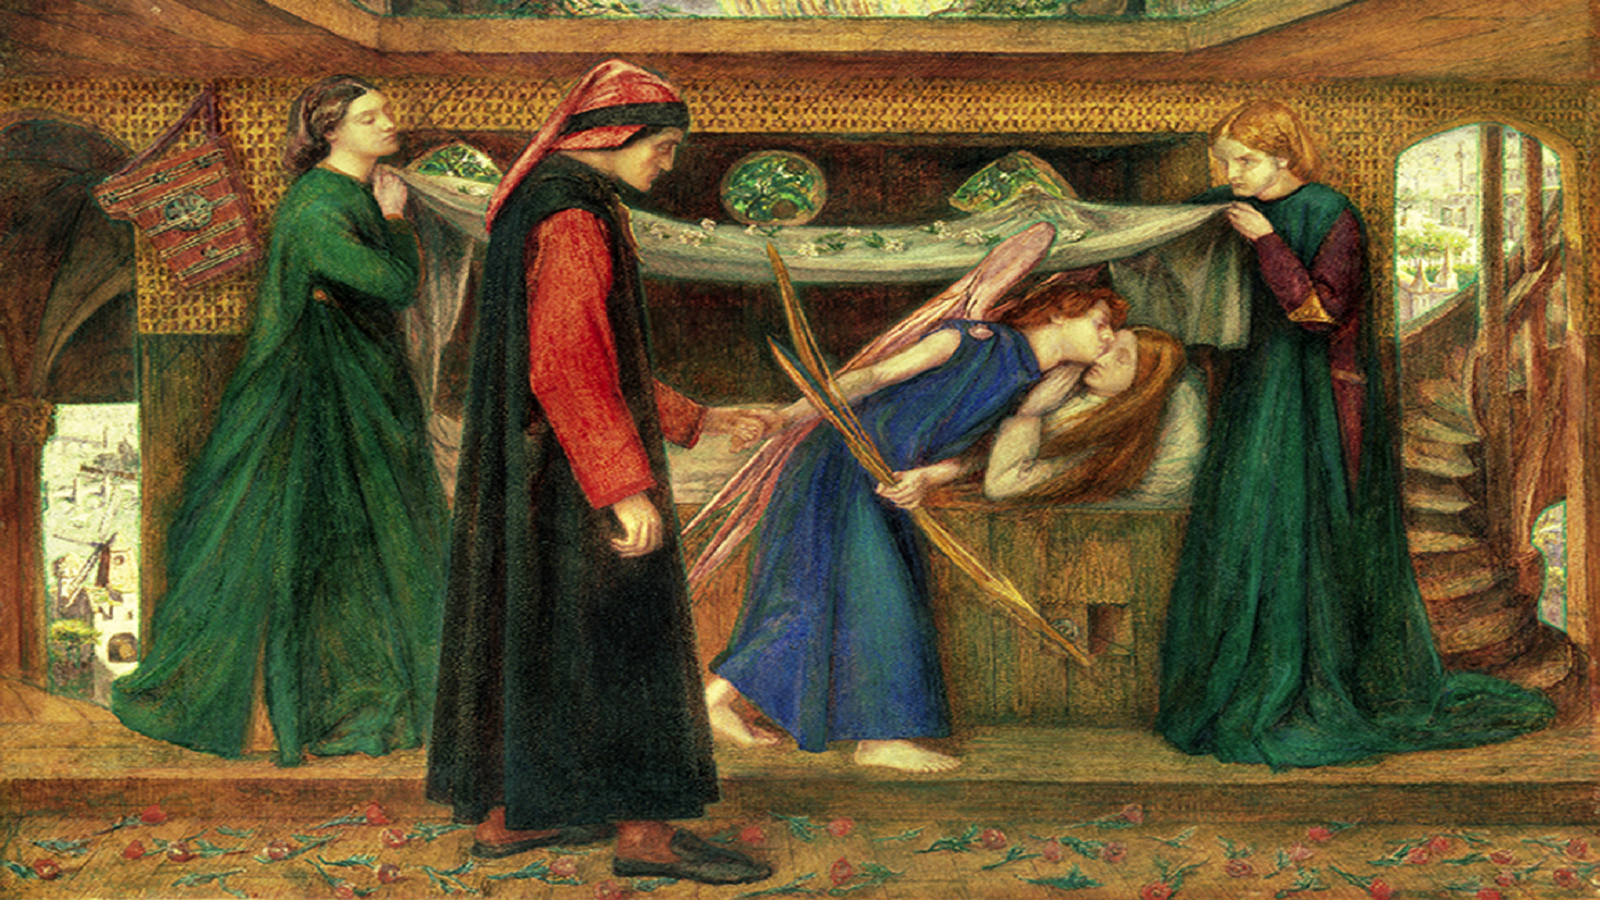  غبريال روزاتي، حلم دانتي عند رحيل بياتريشي، 1871، "غاليري والكر"، ليفربول.